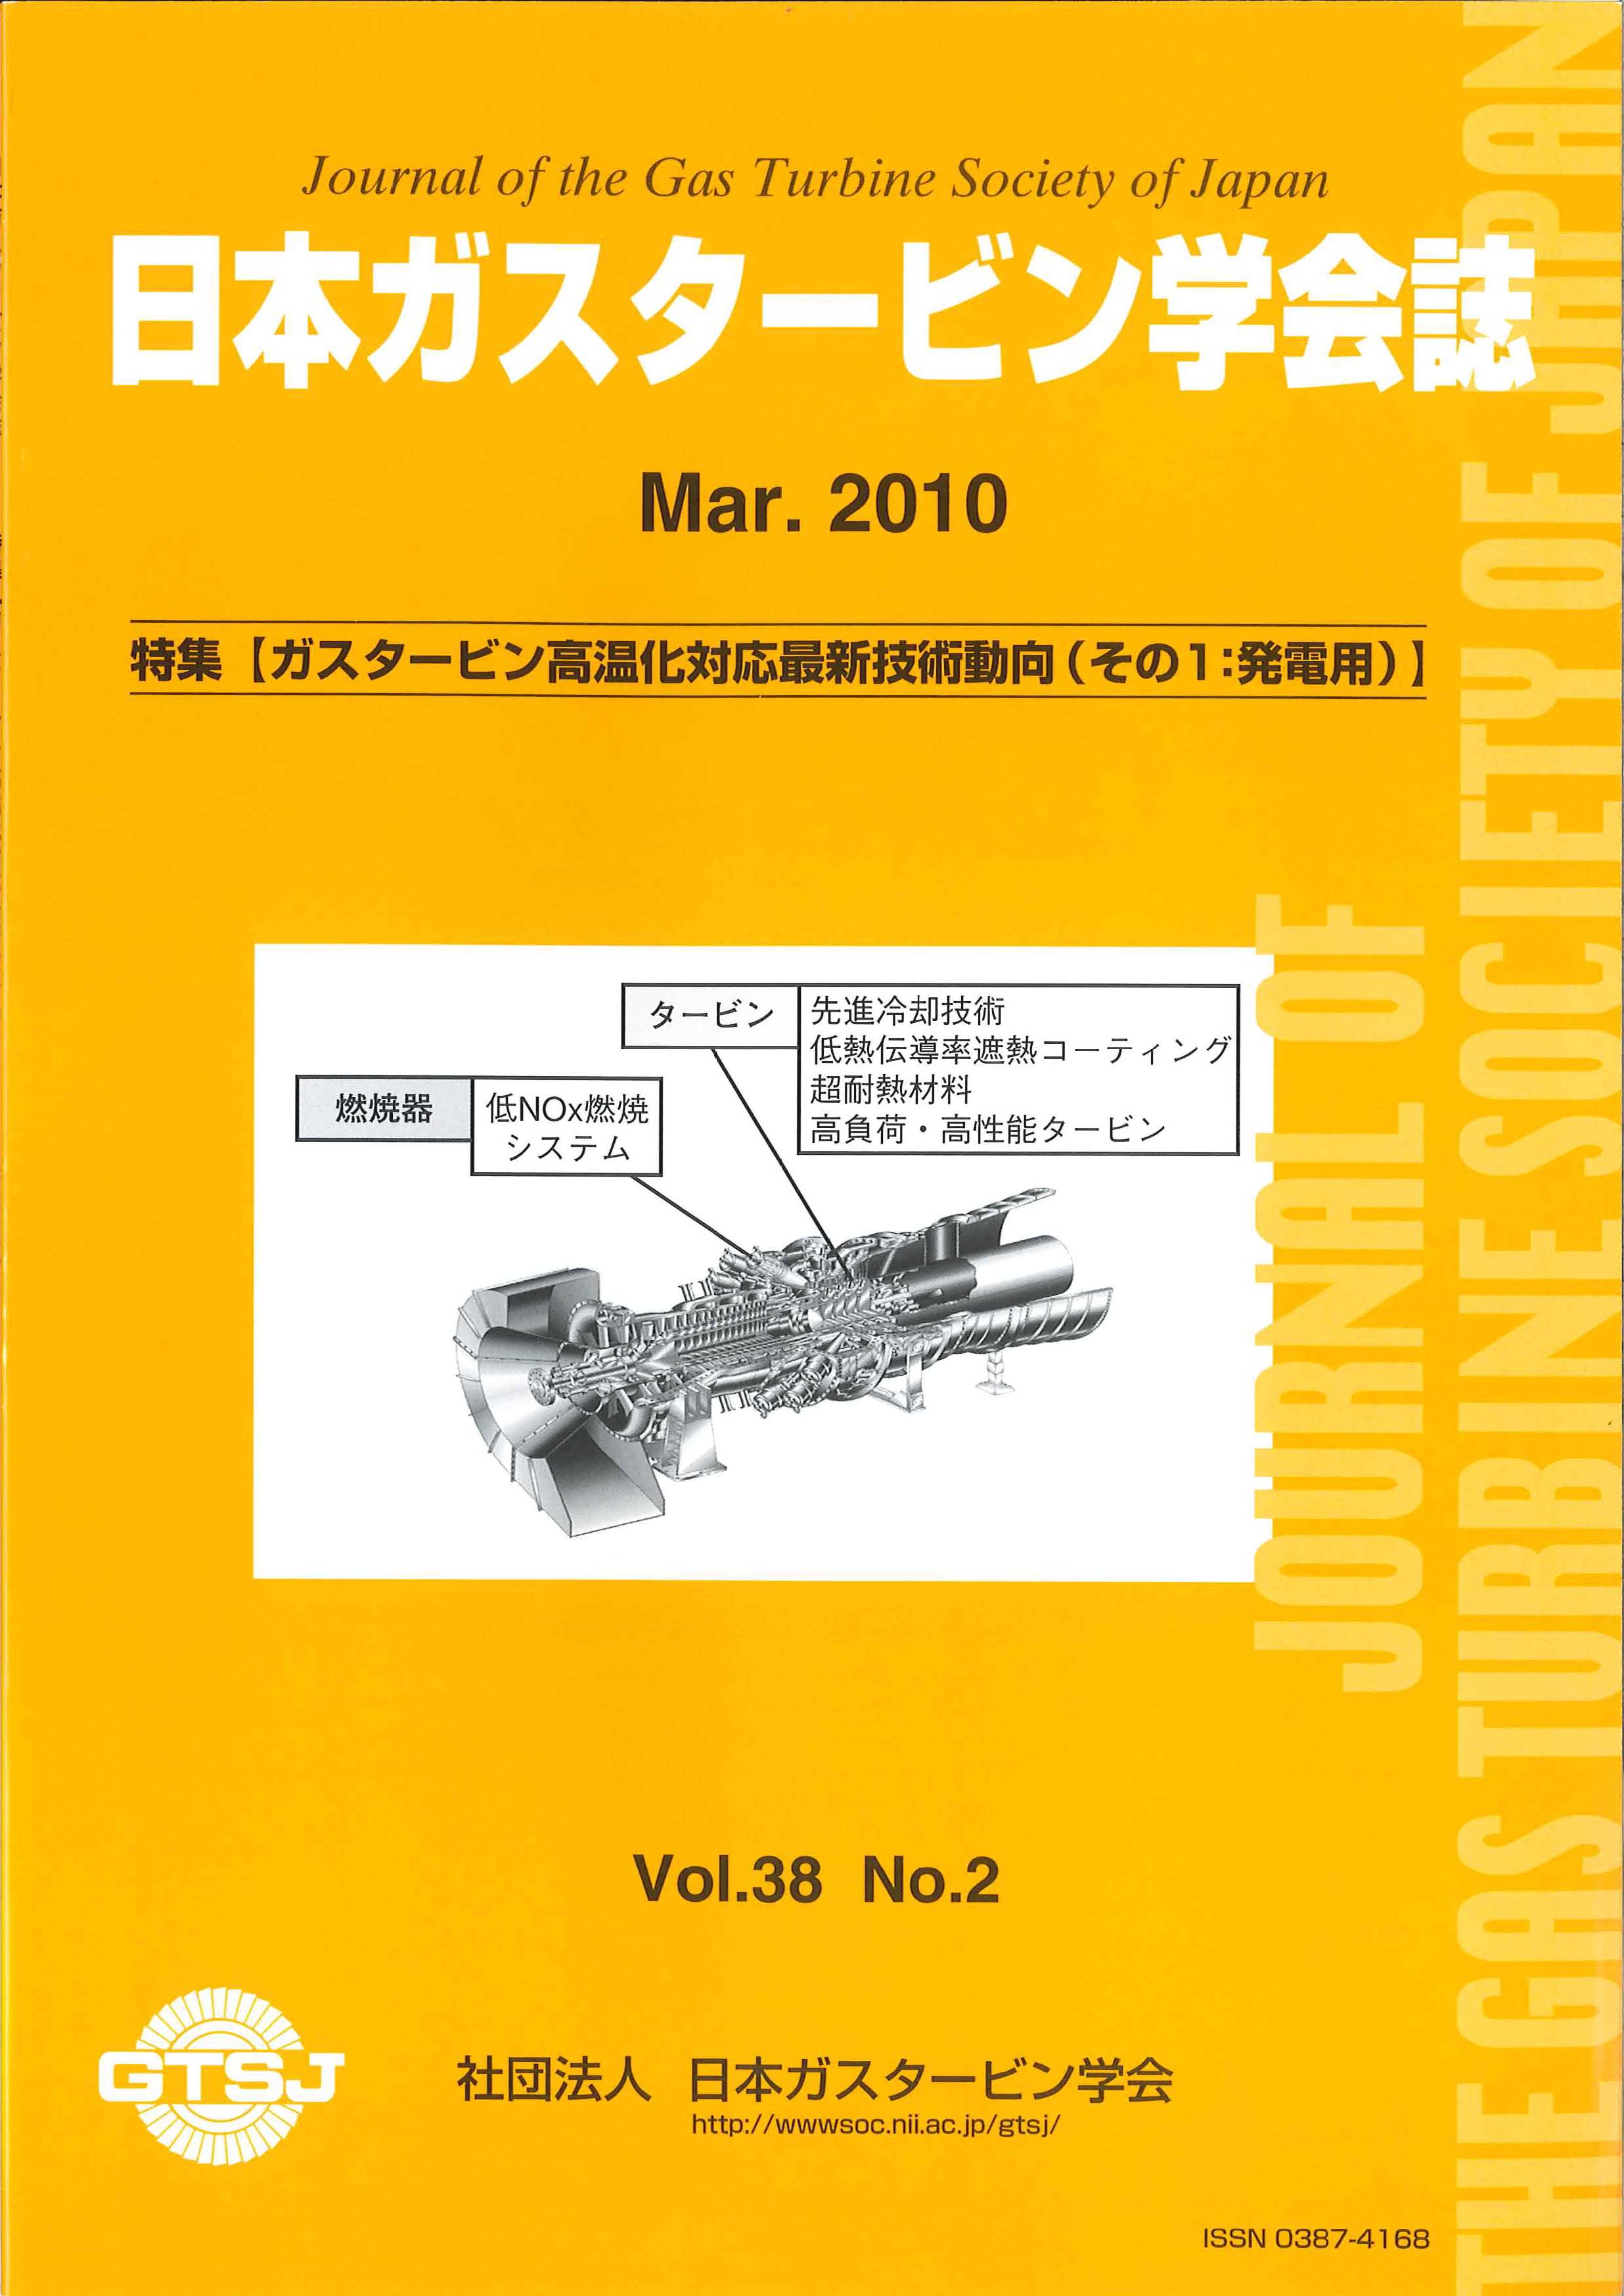 日本ガスタービン学会誌 Vol.38 No.2 2010年3月 表紙画像